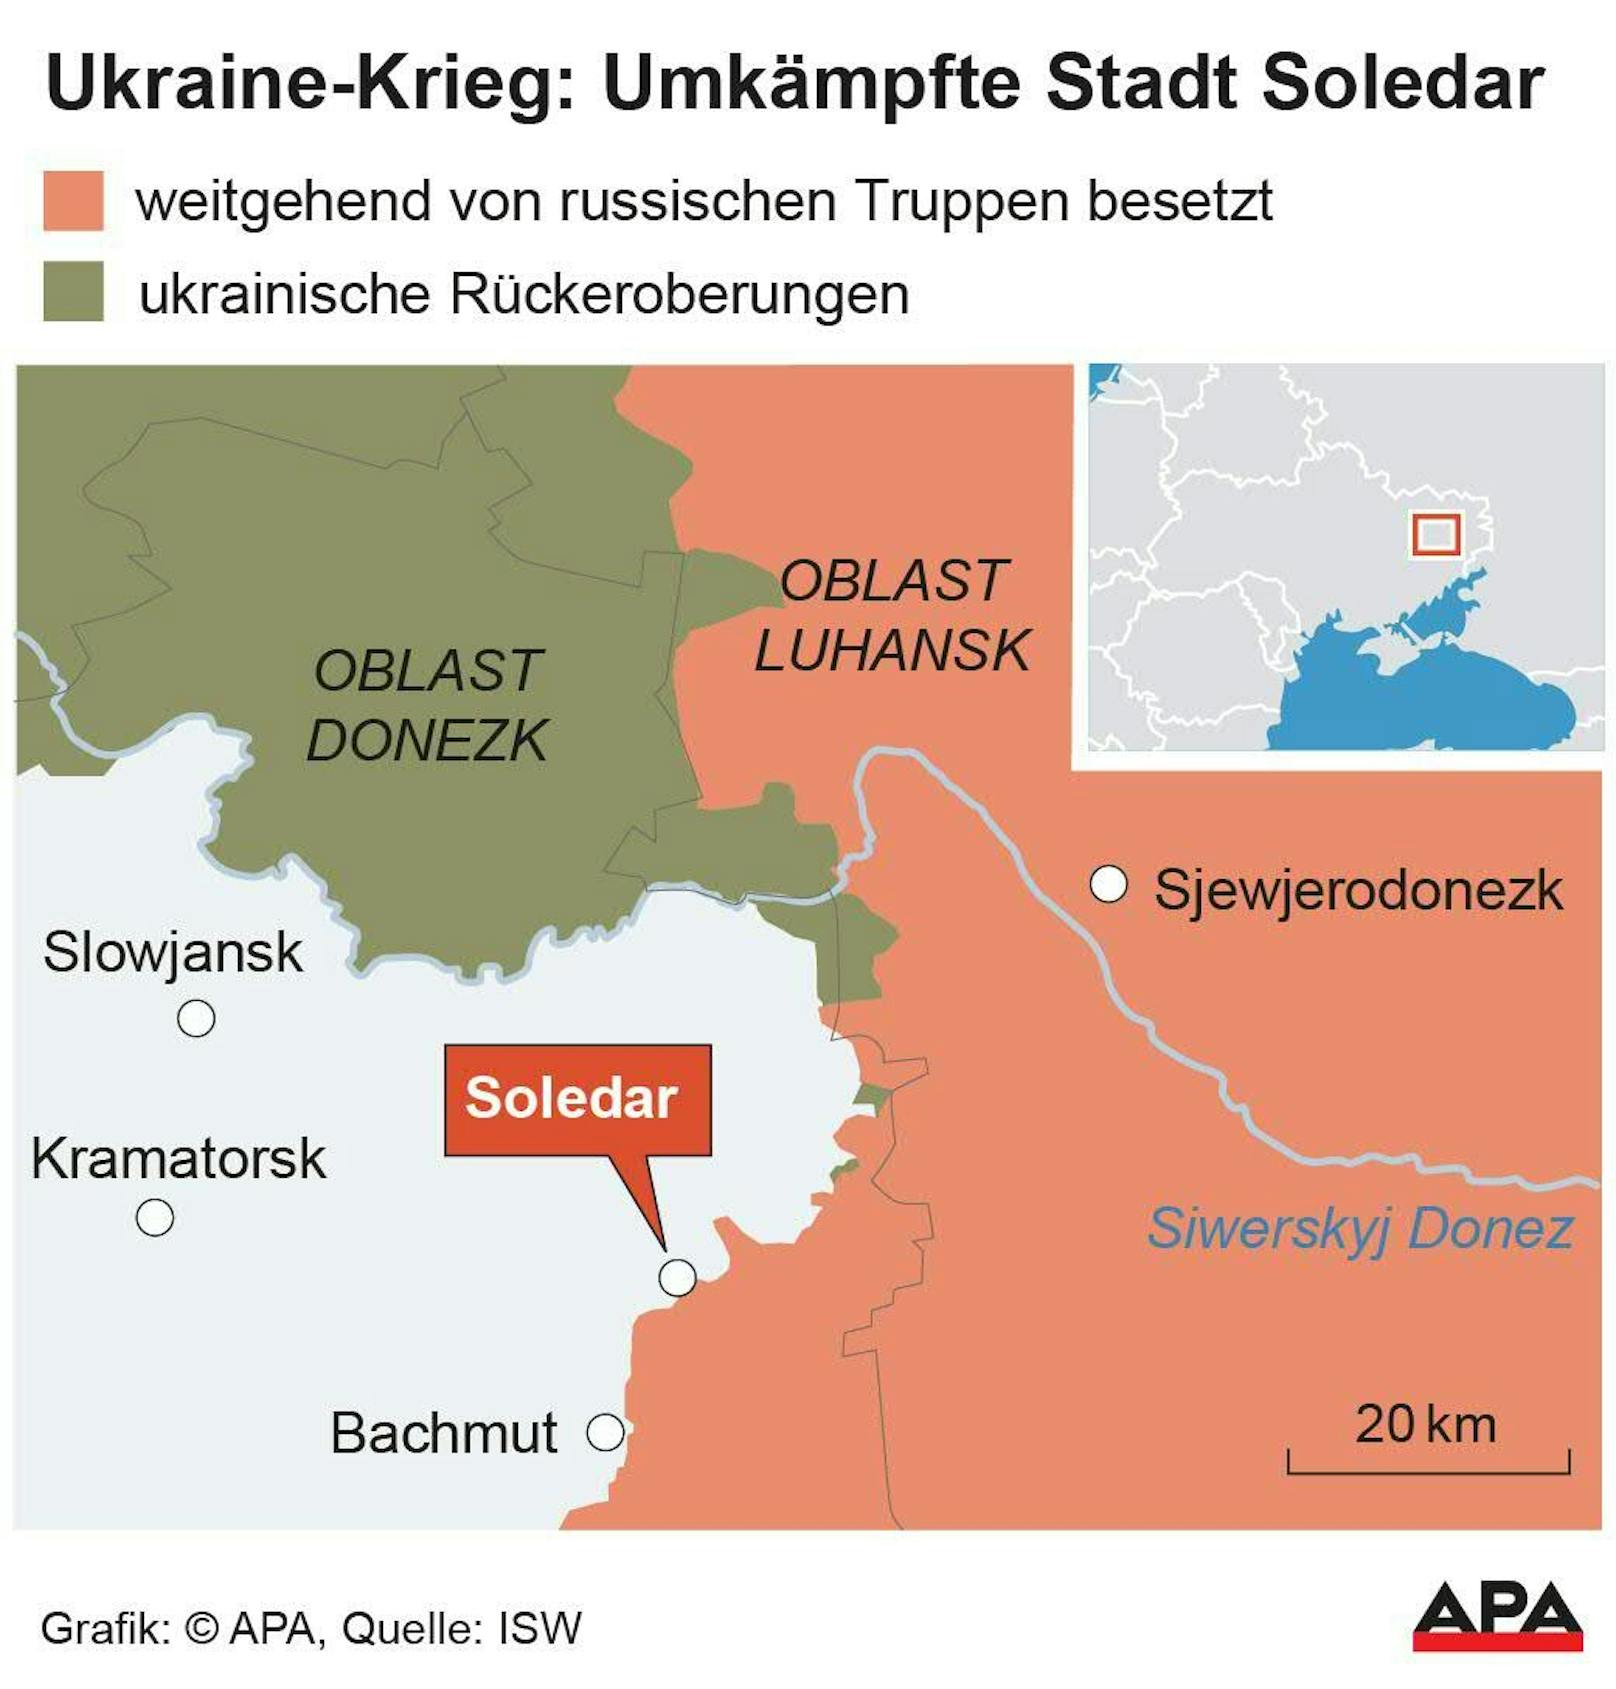 Soledar gilt als strategisch wichtige Stadt. Die Eroberung dürfte es der ukrainischen Armee erschweren, die Stadt Bachmut weiter zu versorgen.&nbsp;